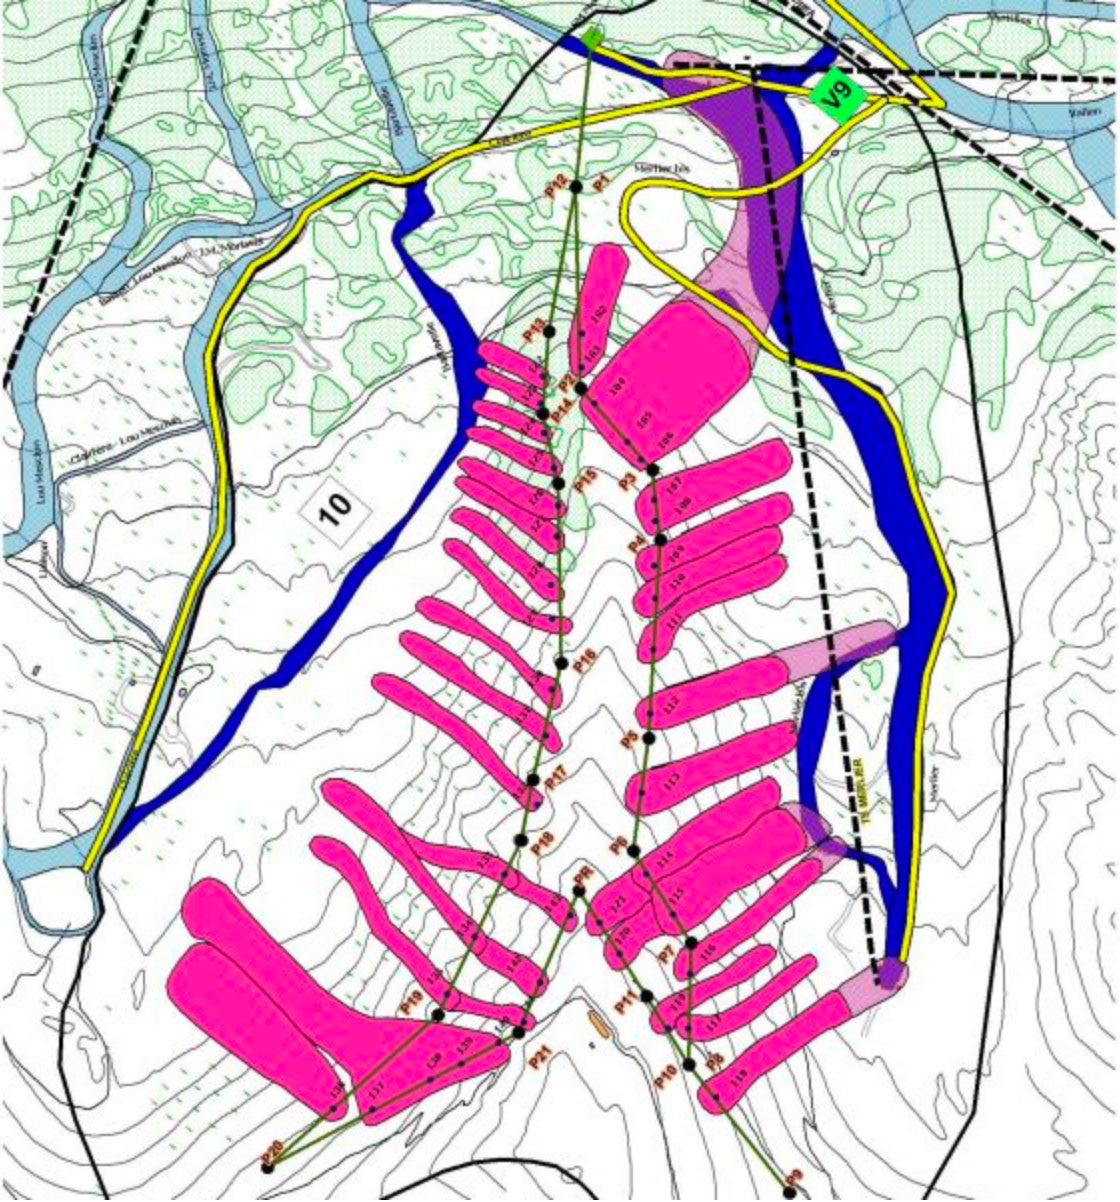 Schéma d'un tracé Catex sur le plan d'intervention et de déclenchement d'avalanches